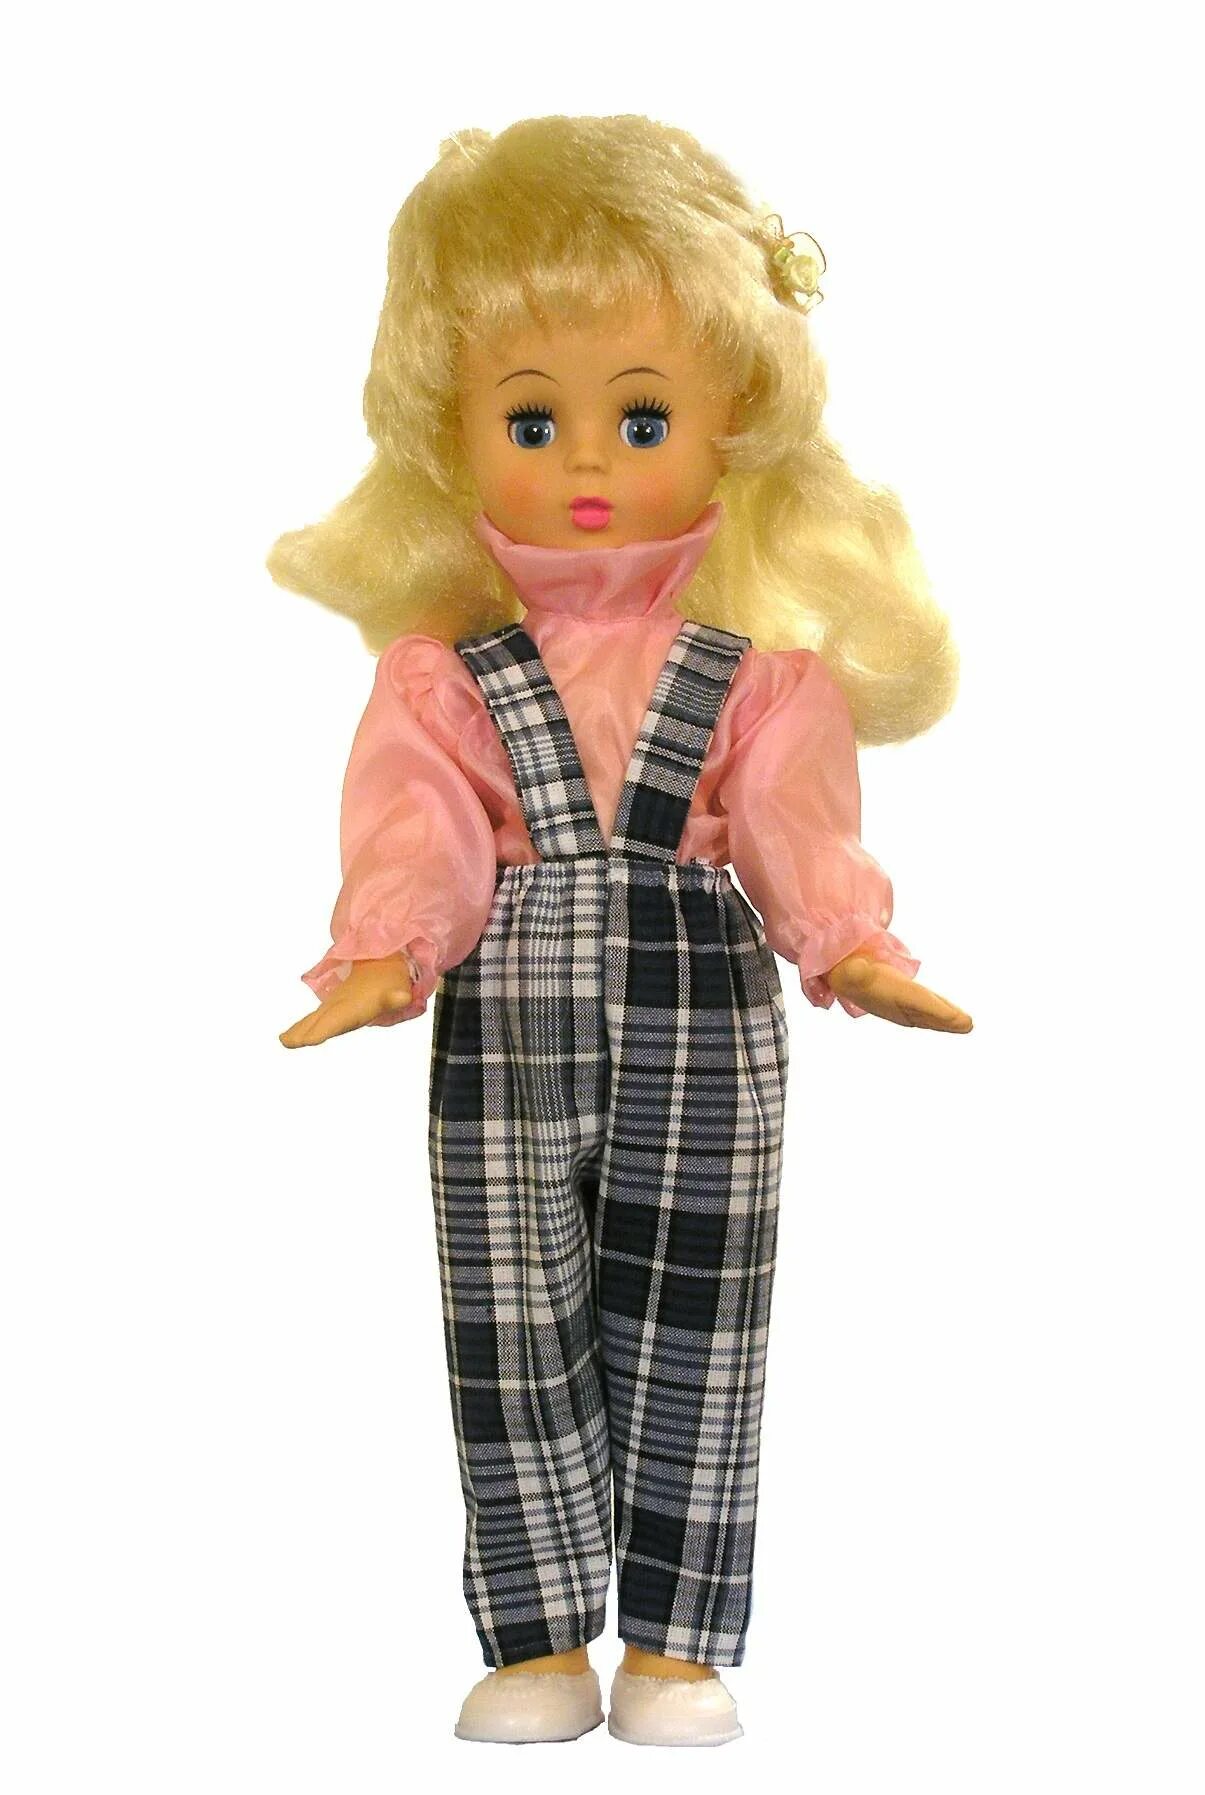 Купить куклу оптом. Кукла Вика 40см. Кукла мир кукол Вика, 40 см, пвх40-8. Кукла "Верочка", 40 см. Пвх40-1 кукла Верочка 40см (пакет ) 451.